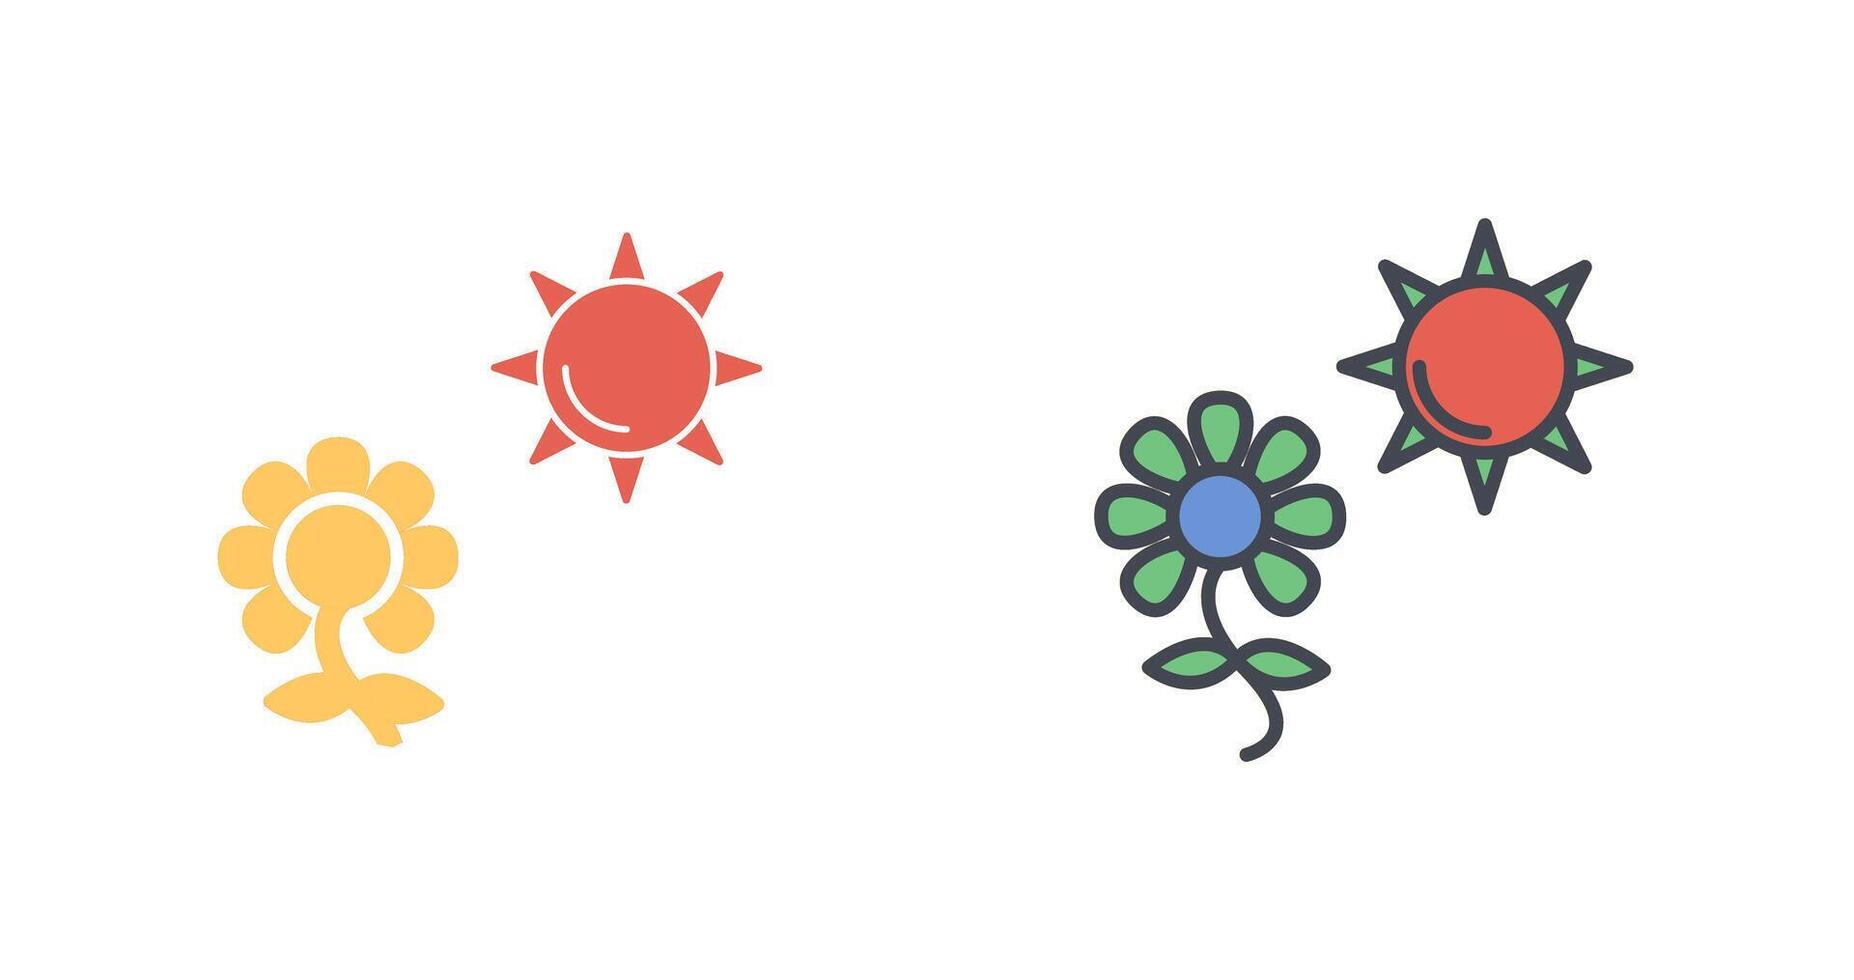 blomma i solljus ikon design vektor